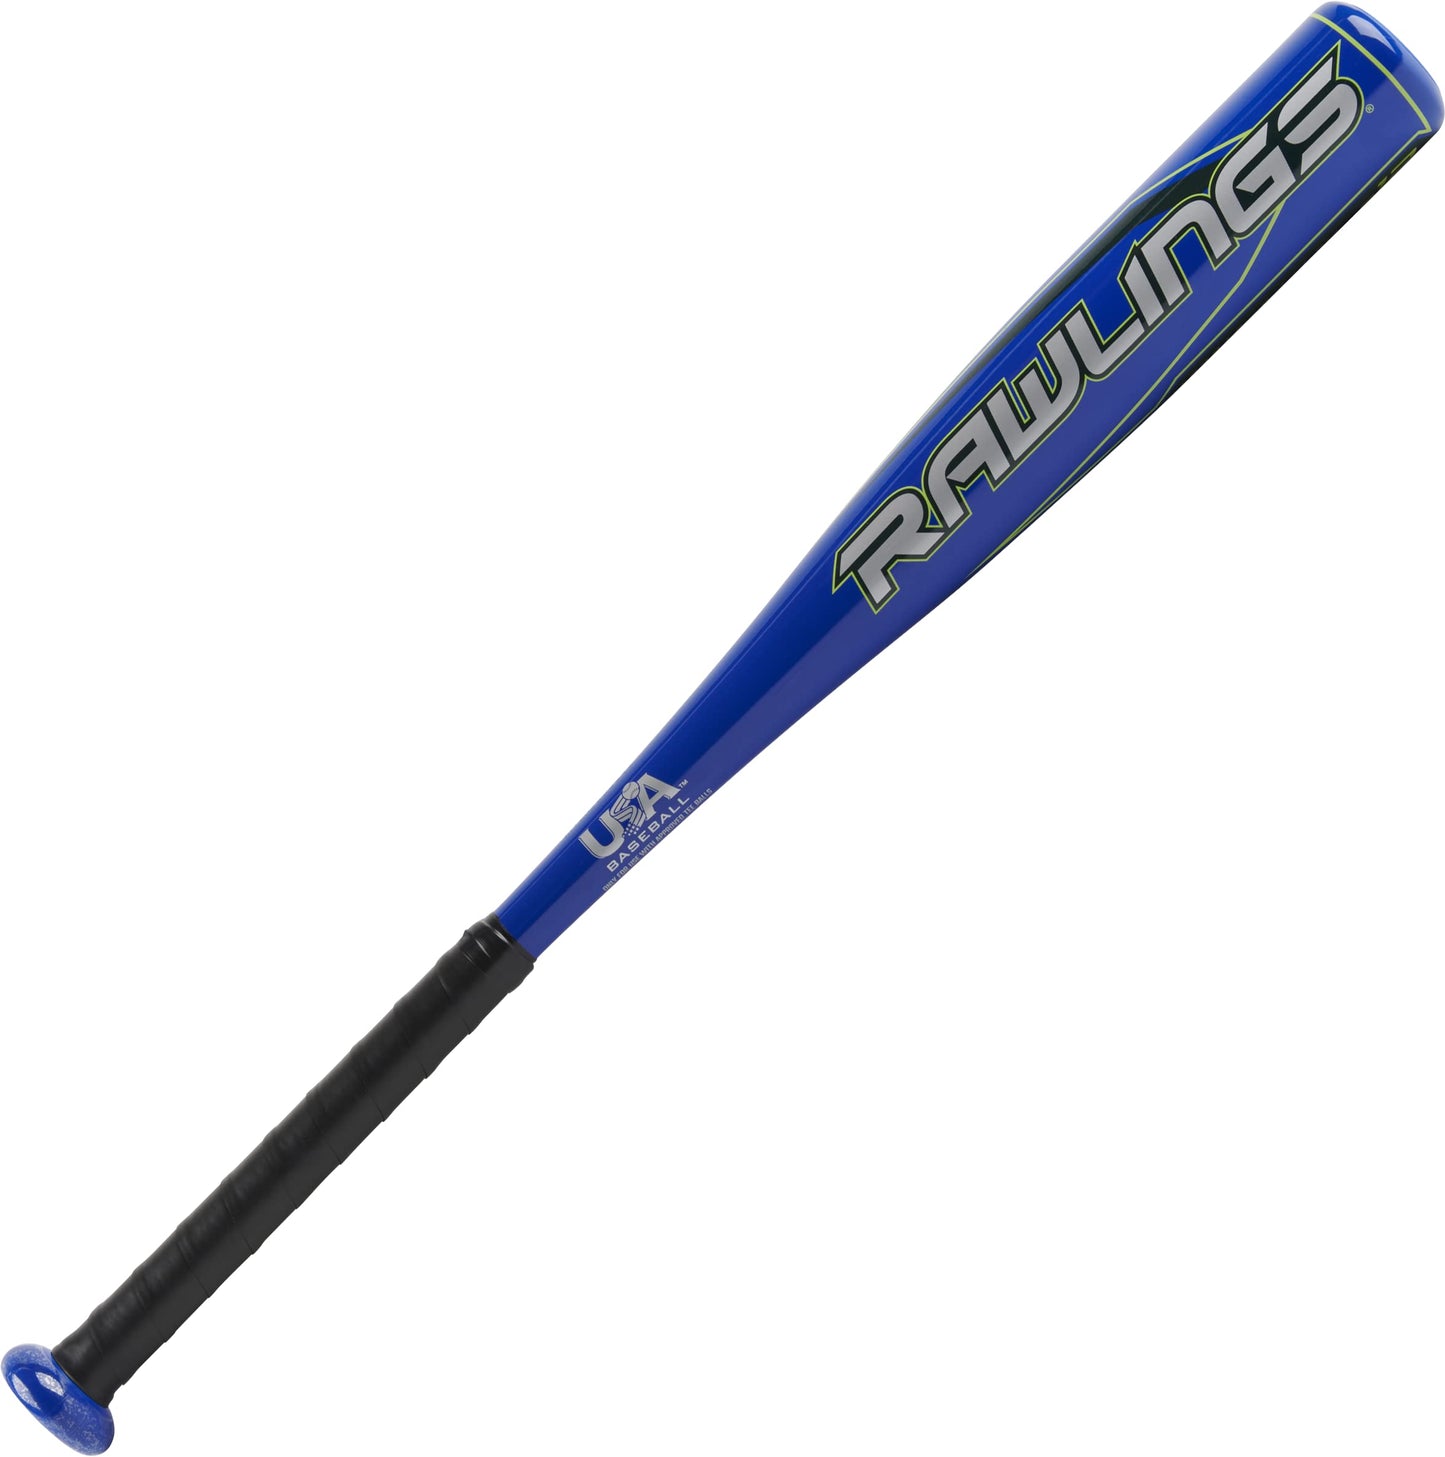 Rawlings | Raptor T-Ball Bat | USA | -12 Drop | 2 1/4 Barrel | 1 Pc. Aluminum